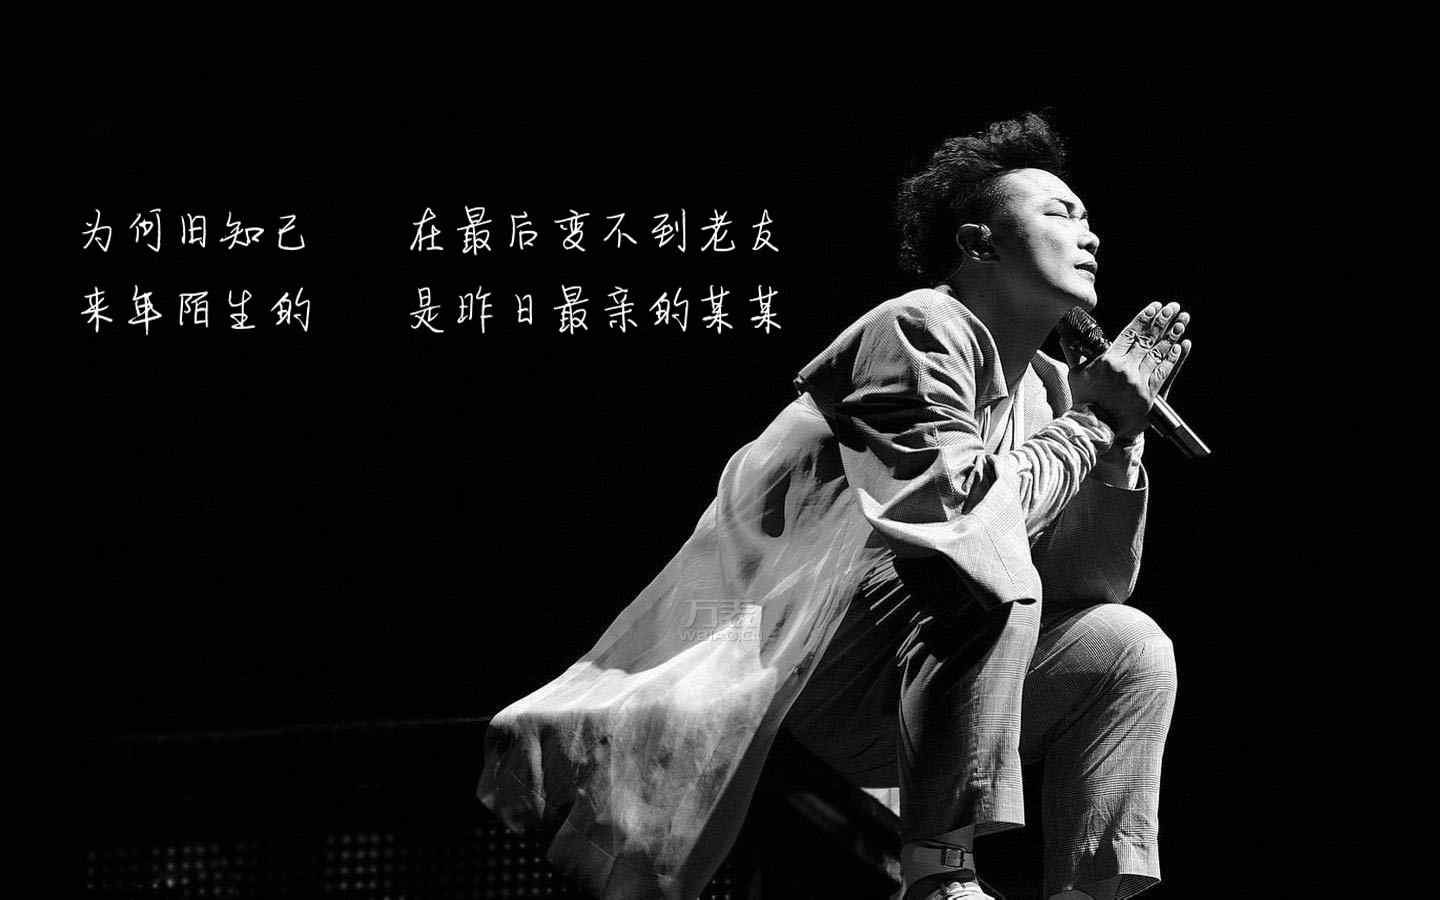 陈奕迅《最佳损友》歌词图片桌面壁纸